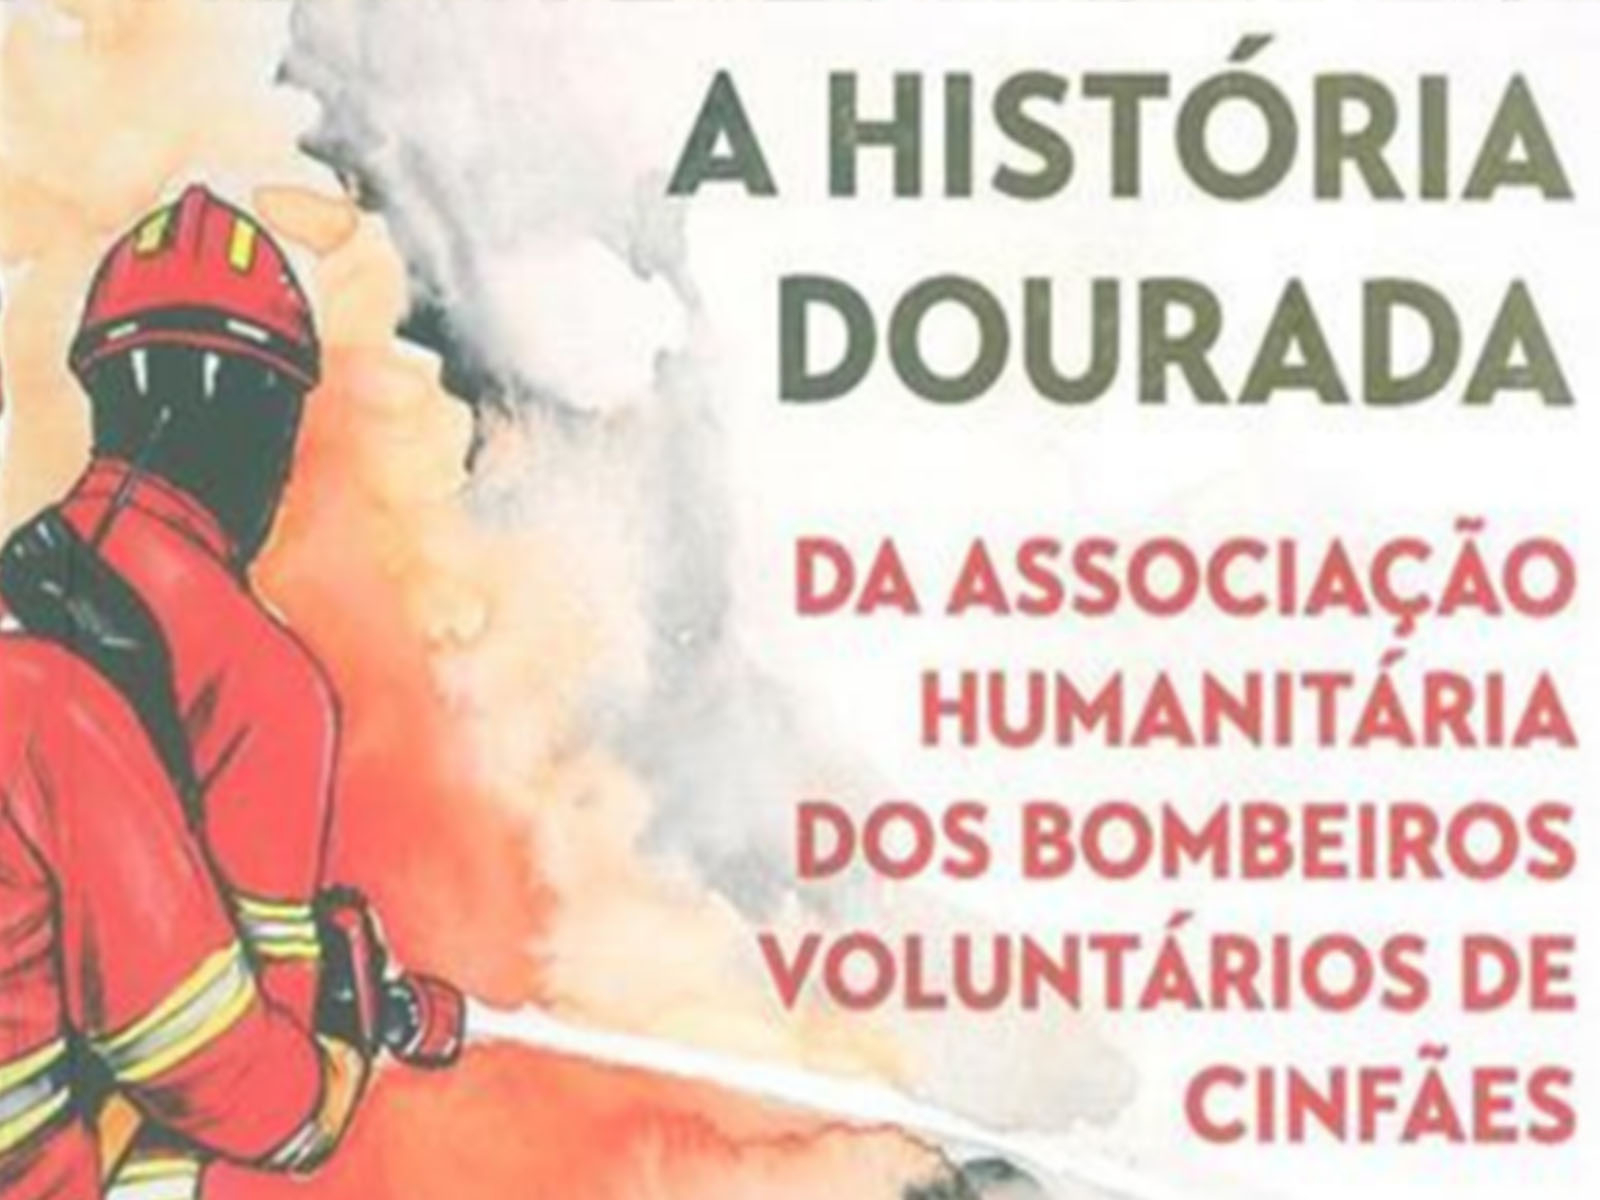 O lema “Vida por vida” retratado no livro A História Dourada da Associação Humanitária dos Bombeiros Voluntários de Cinfães, da autoria de José Duarte Oliveira